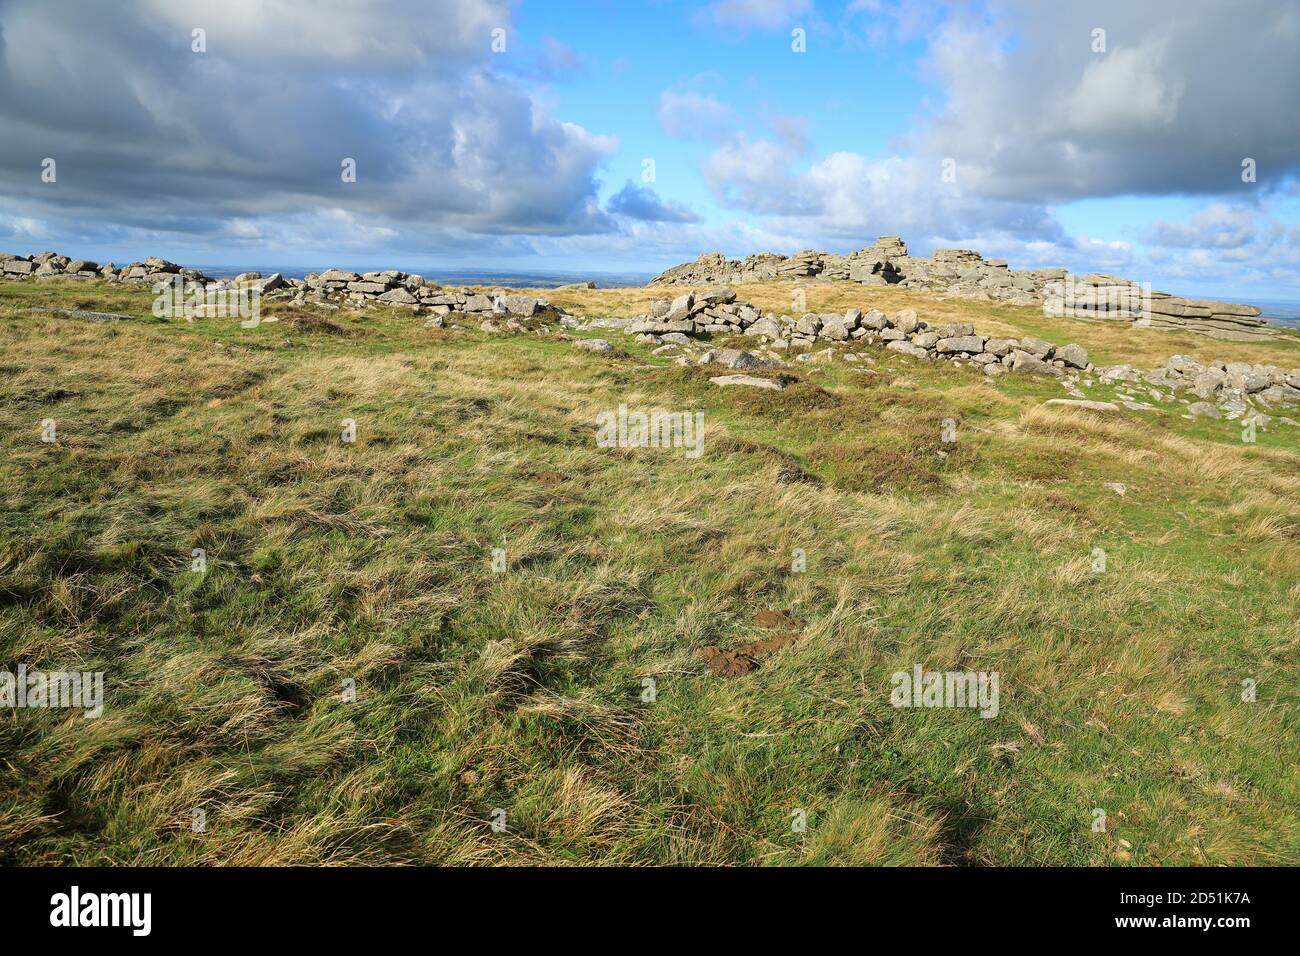 Belstone Tor with Irishman's wall, Belstone, Dartmoor, National Park, Devon, England, UK Stock Photo